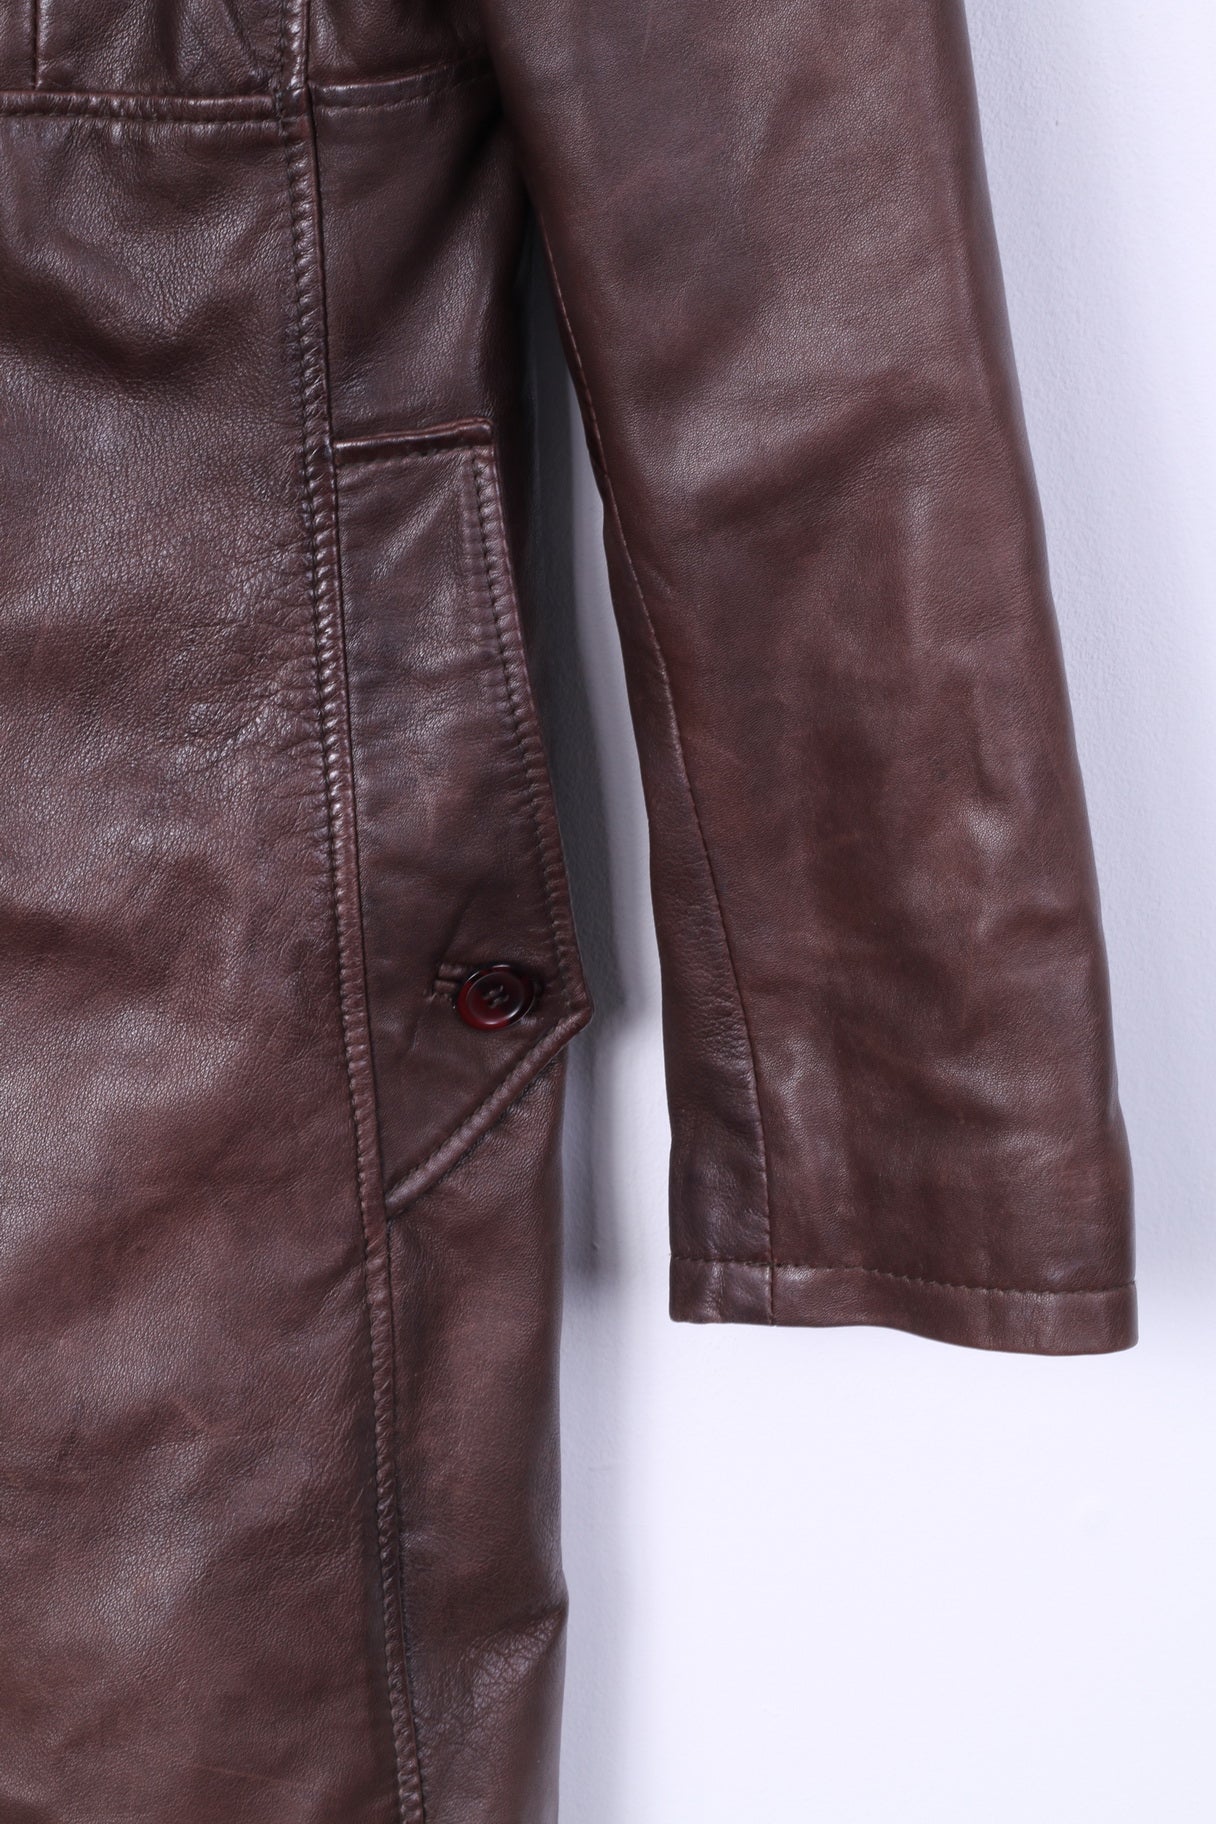 Aleksander Of Norway Women 40 M Coat Jacket Dark Brown Leather Single Breasted Top